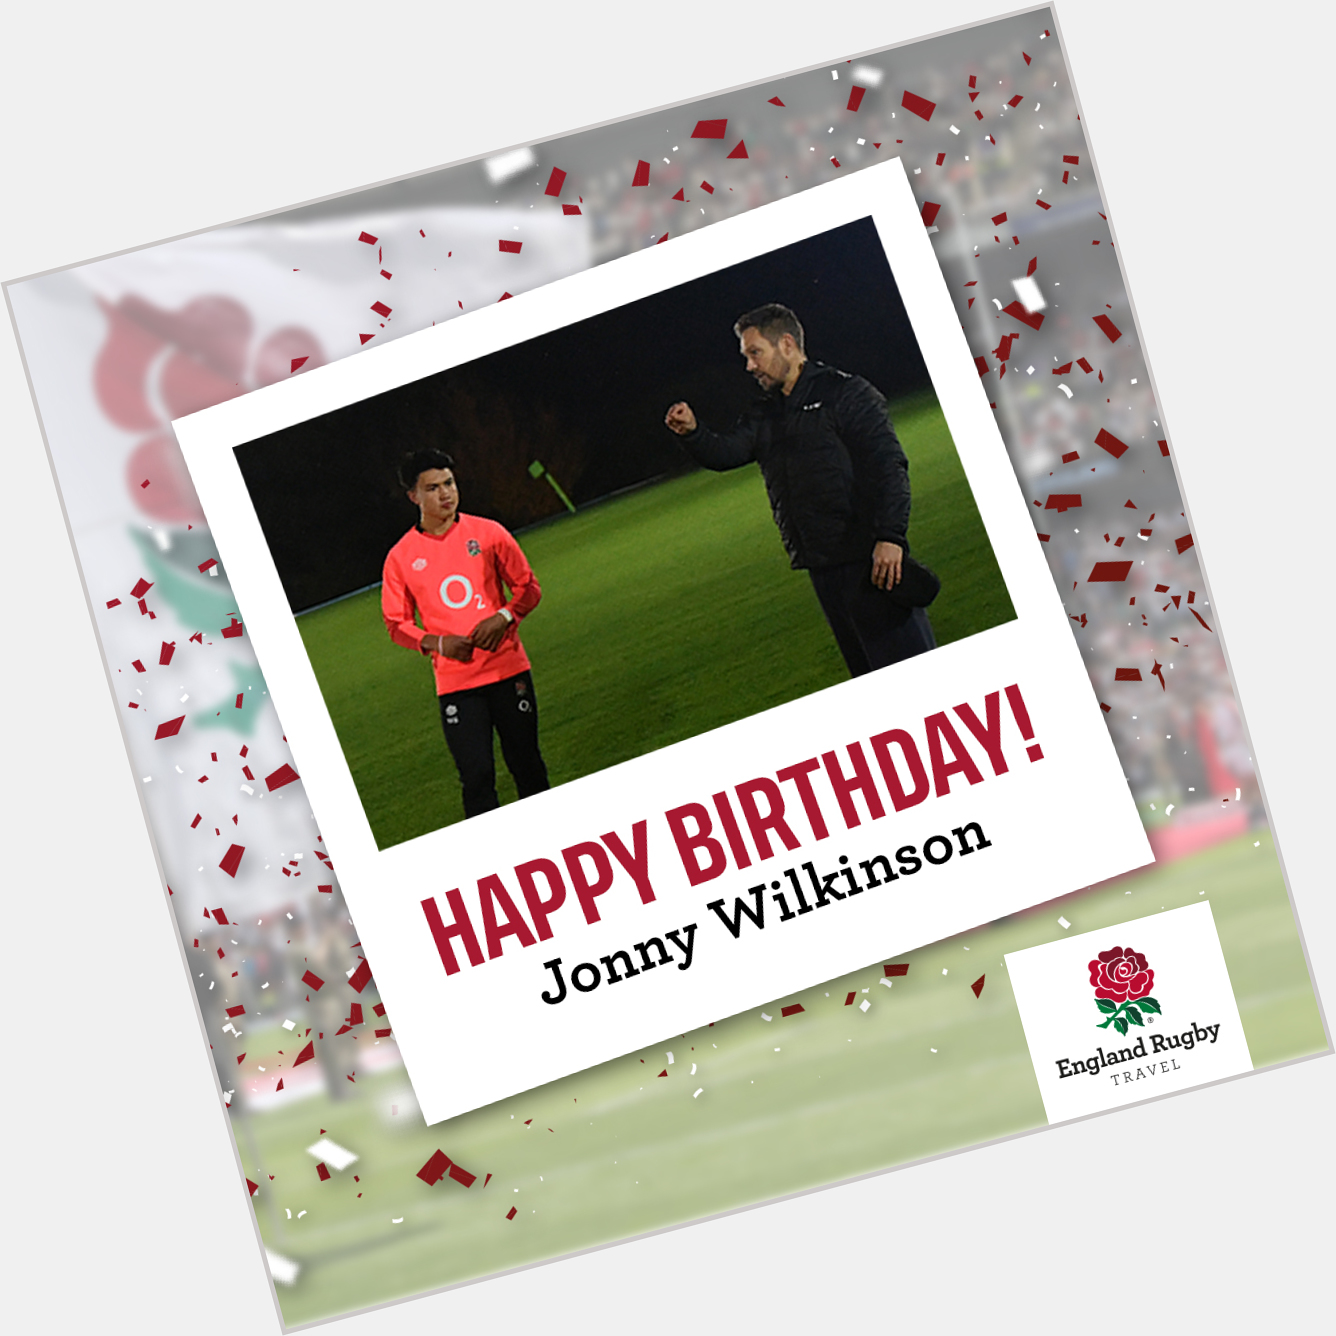 Wishing a happy birthday to former World Cup winner Jonny Wilkinson  